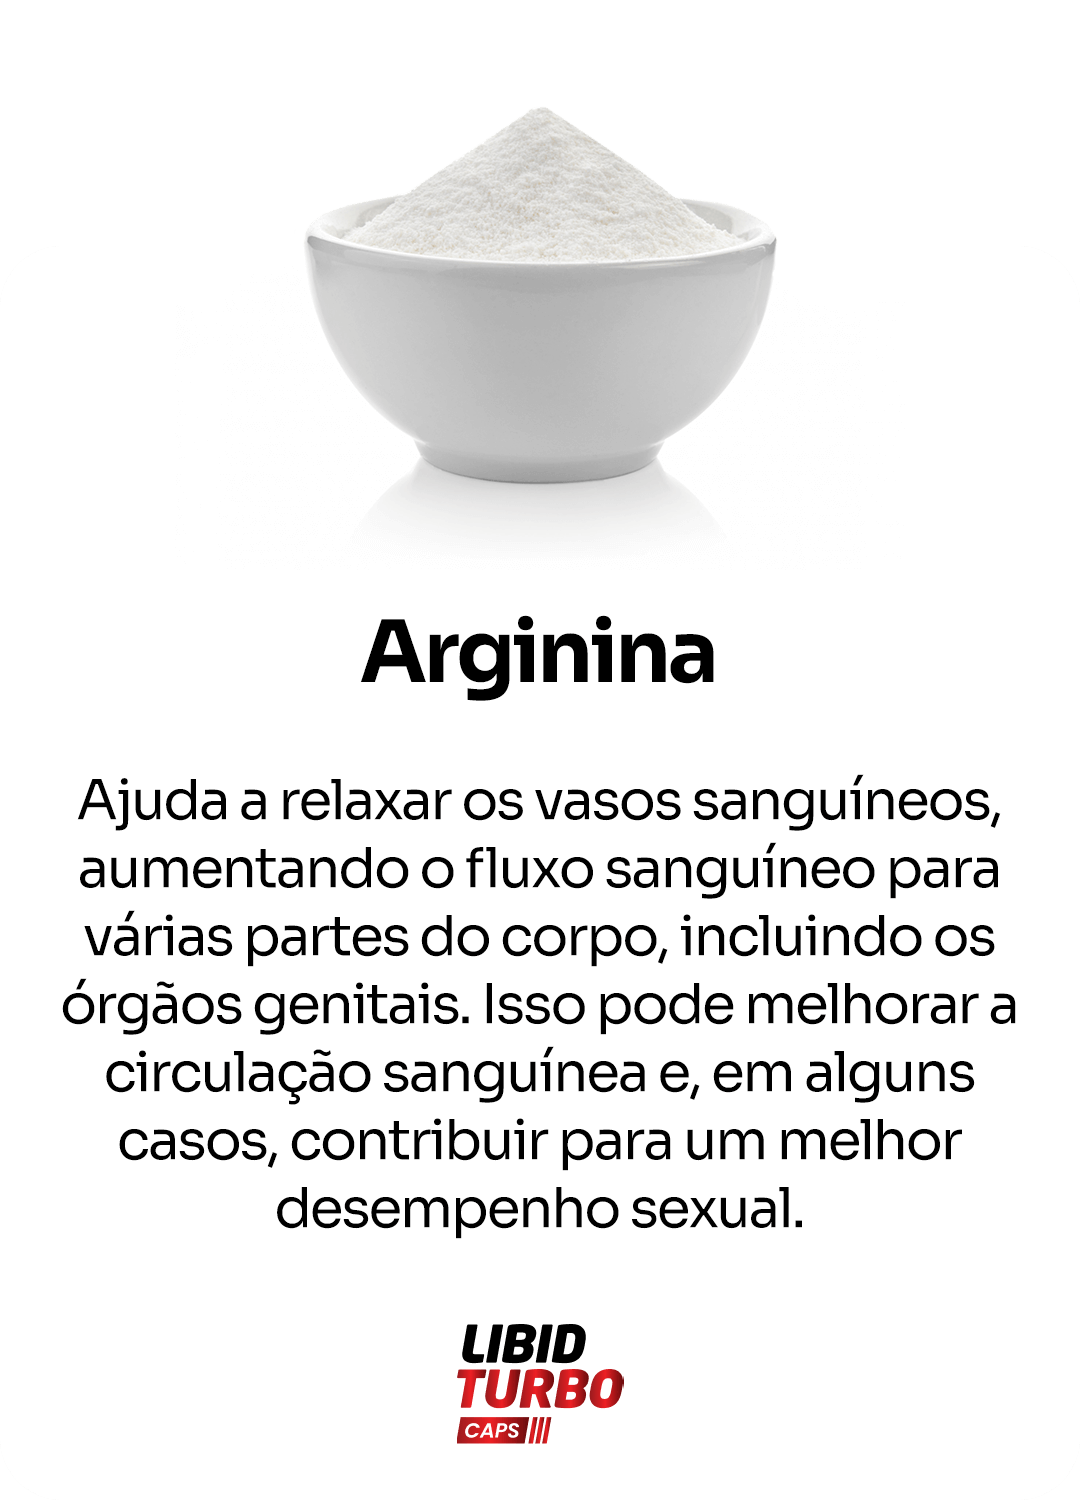 Arginina